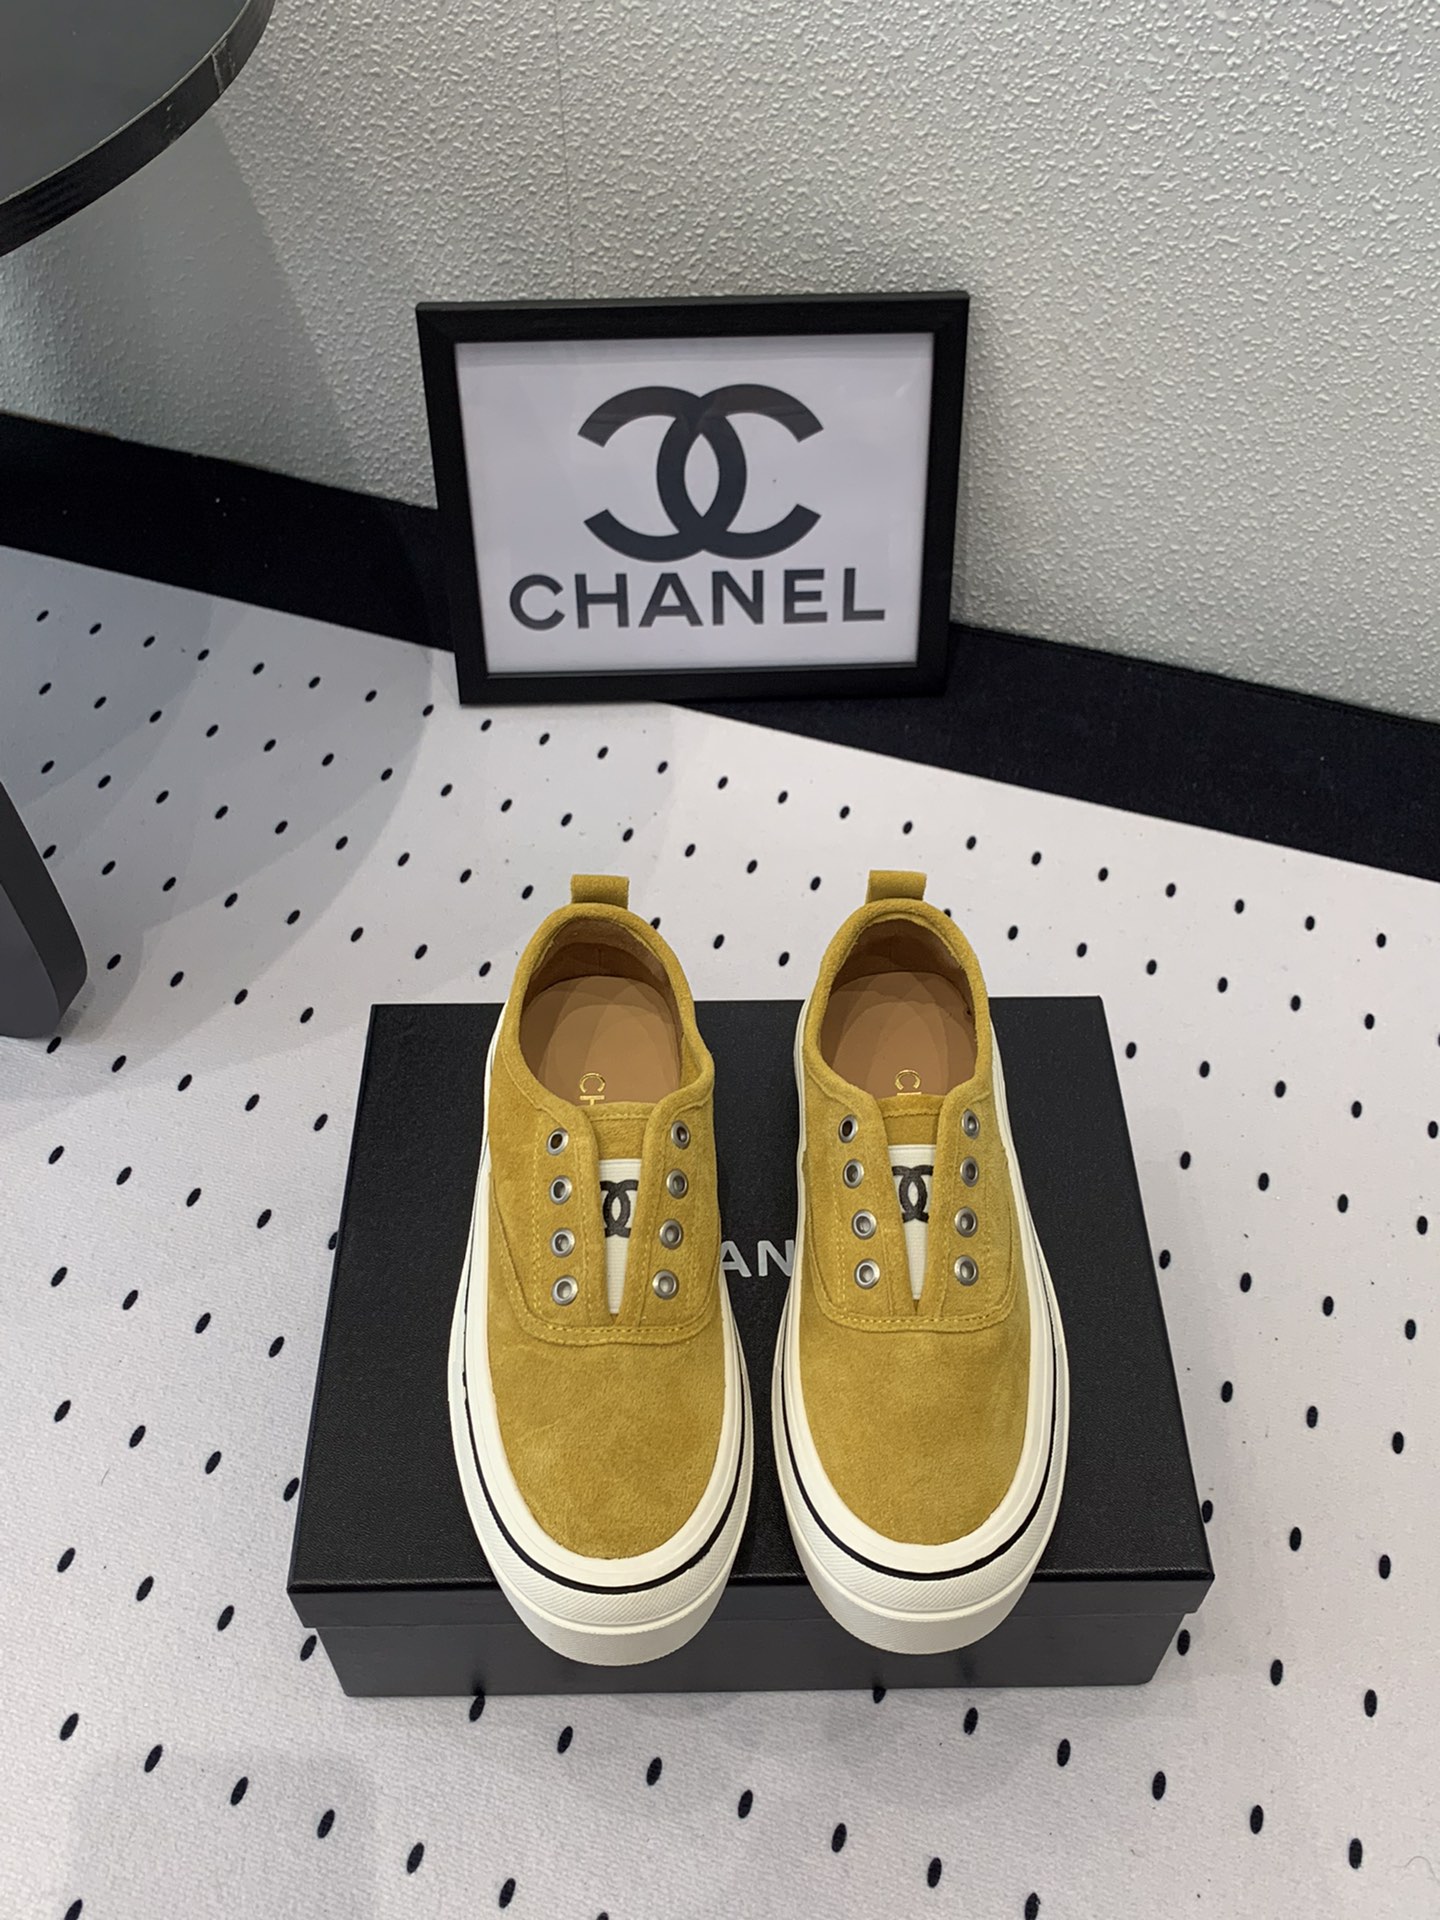 Chanel Chaussures En Toile Réplique de concepteur
 Toile Deerskin Peau mouton Le TPU Fashion